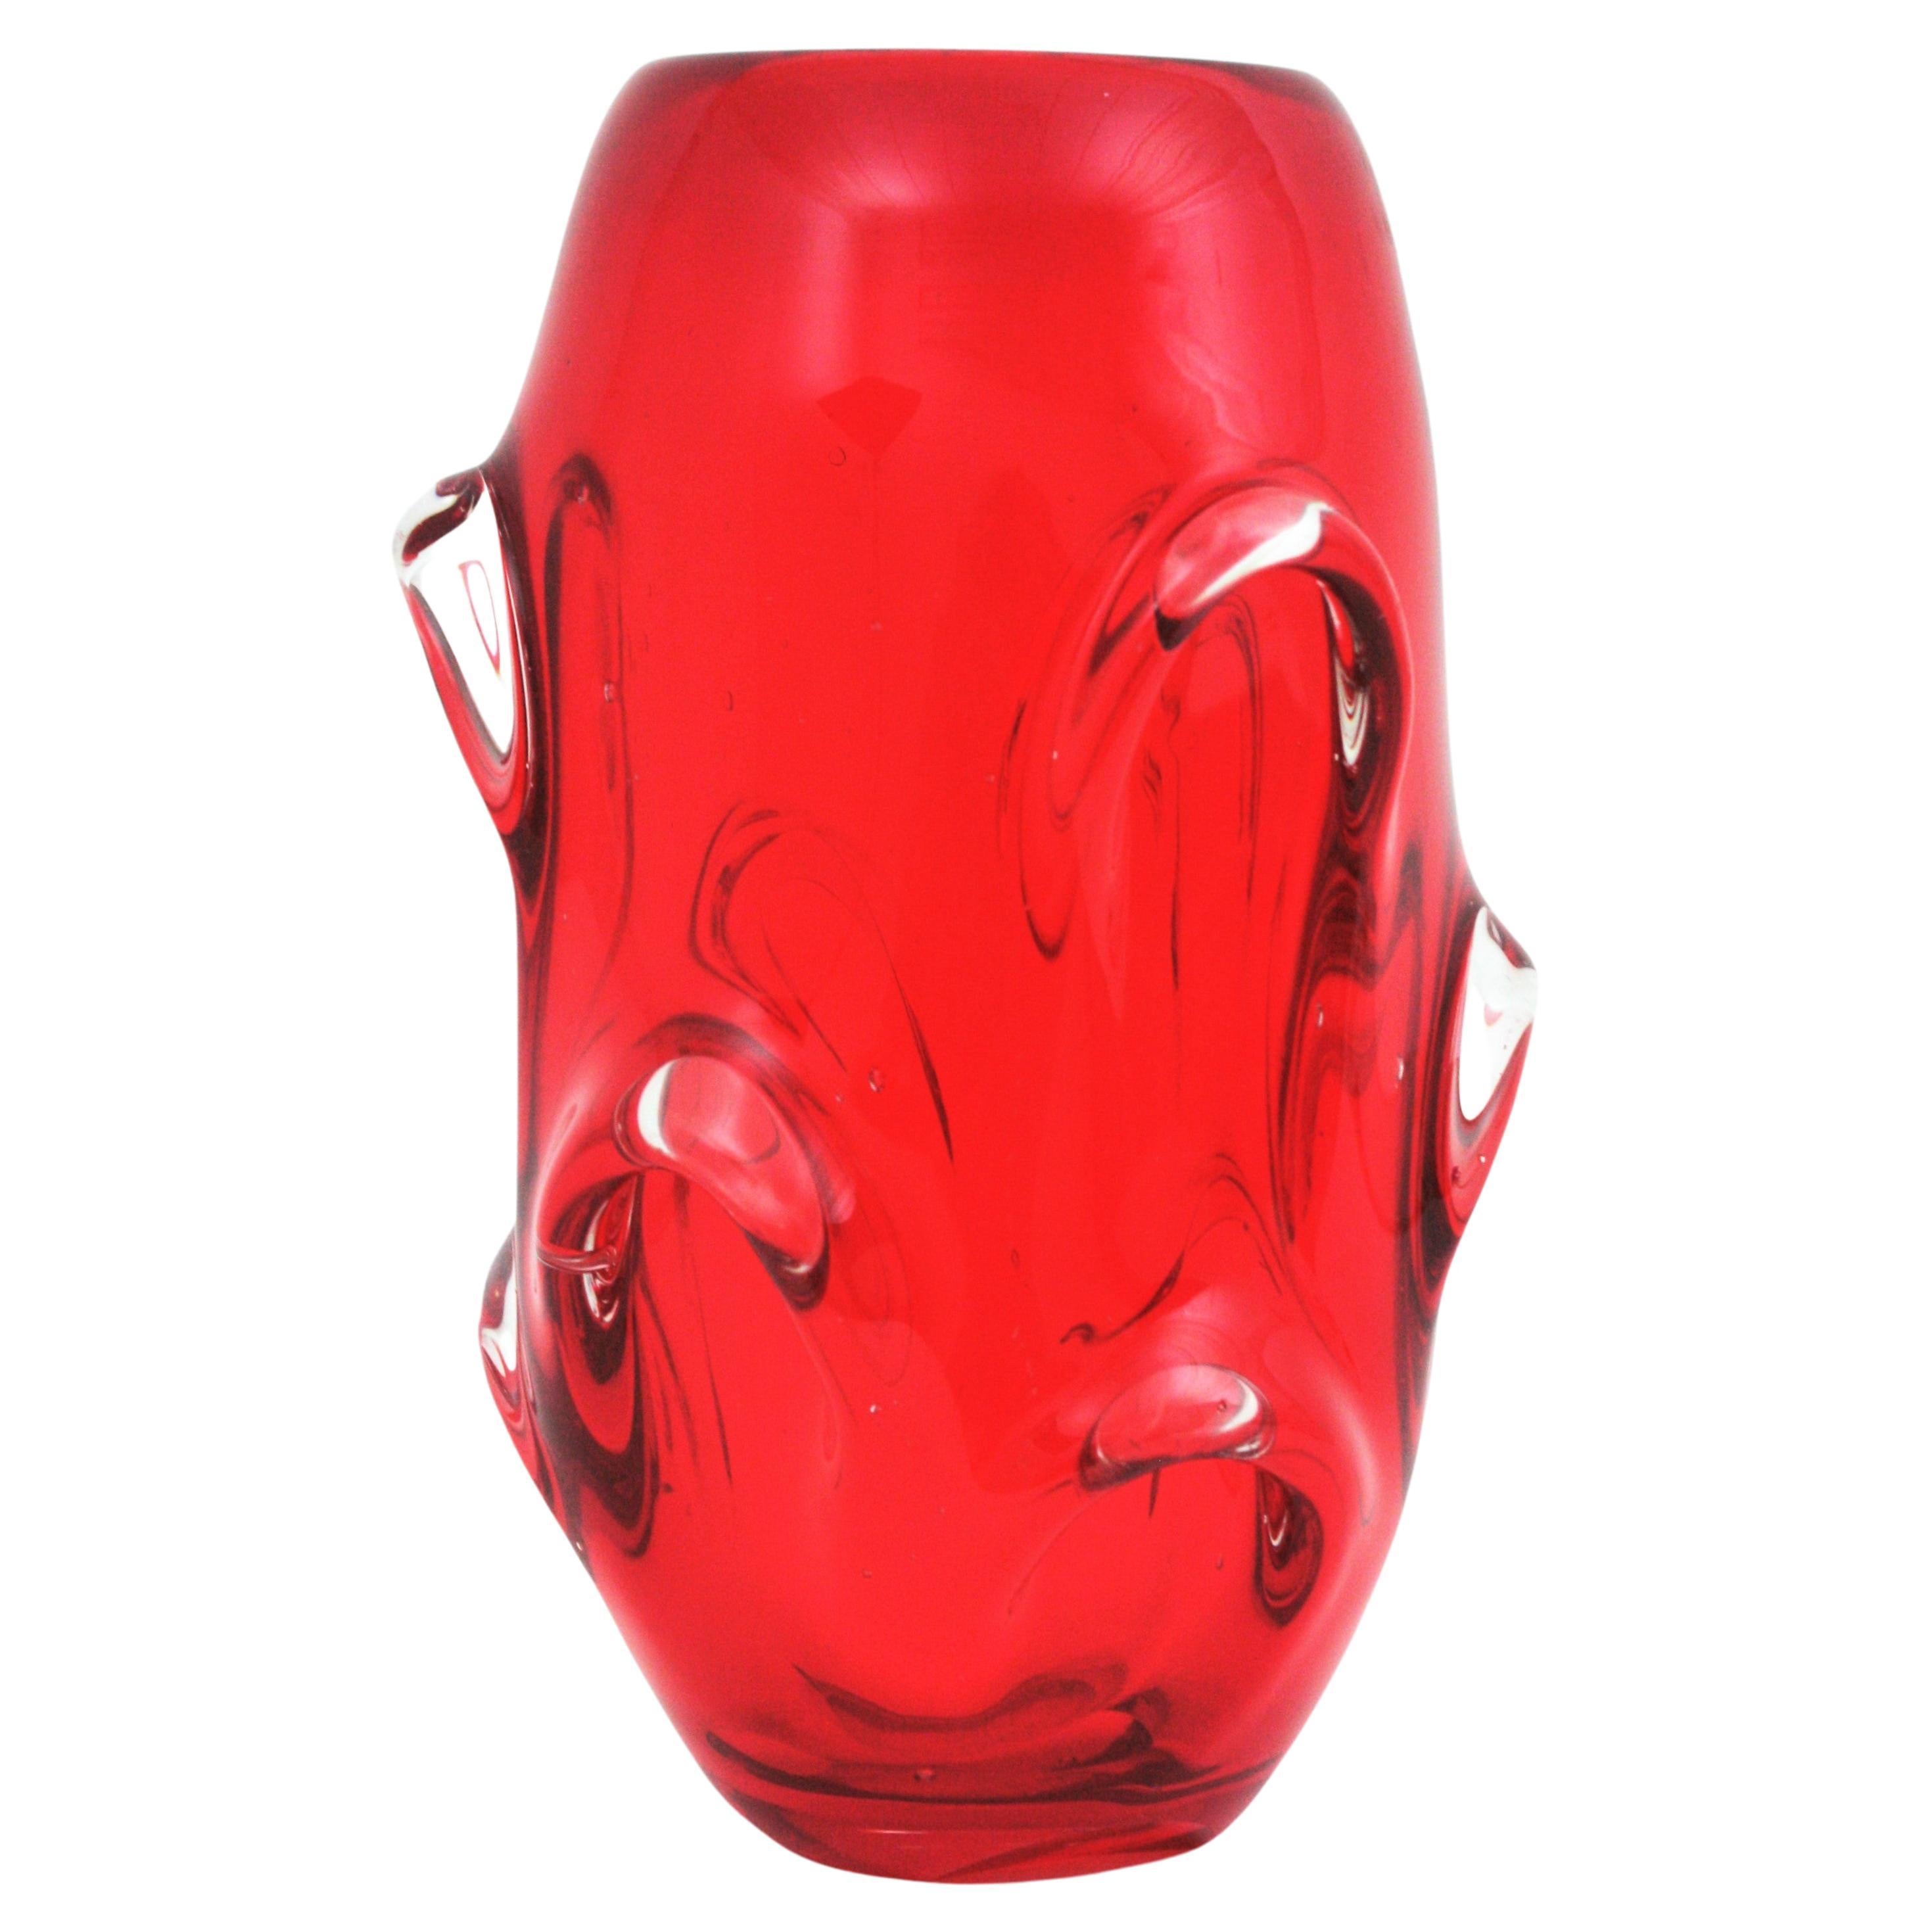 Rote und klare Kunstglasvase im Stil von 'Tronco'. Archimede Seguso zugeschrieben, Italien, 1960er Jahre
Eine spektakuläre mundgeblasene Murano Kunstglas Vase in einem lebendigen Rubinrot mit gezogenen Details gründlich. Sehr attraktiv, wenn das